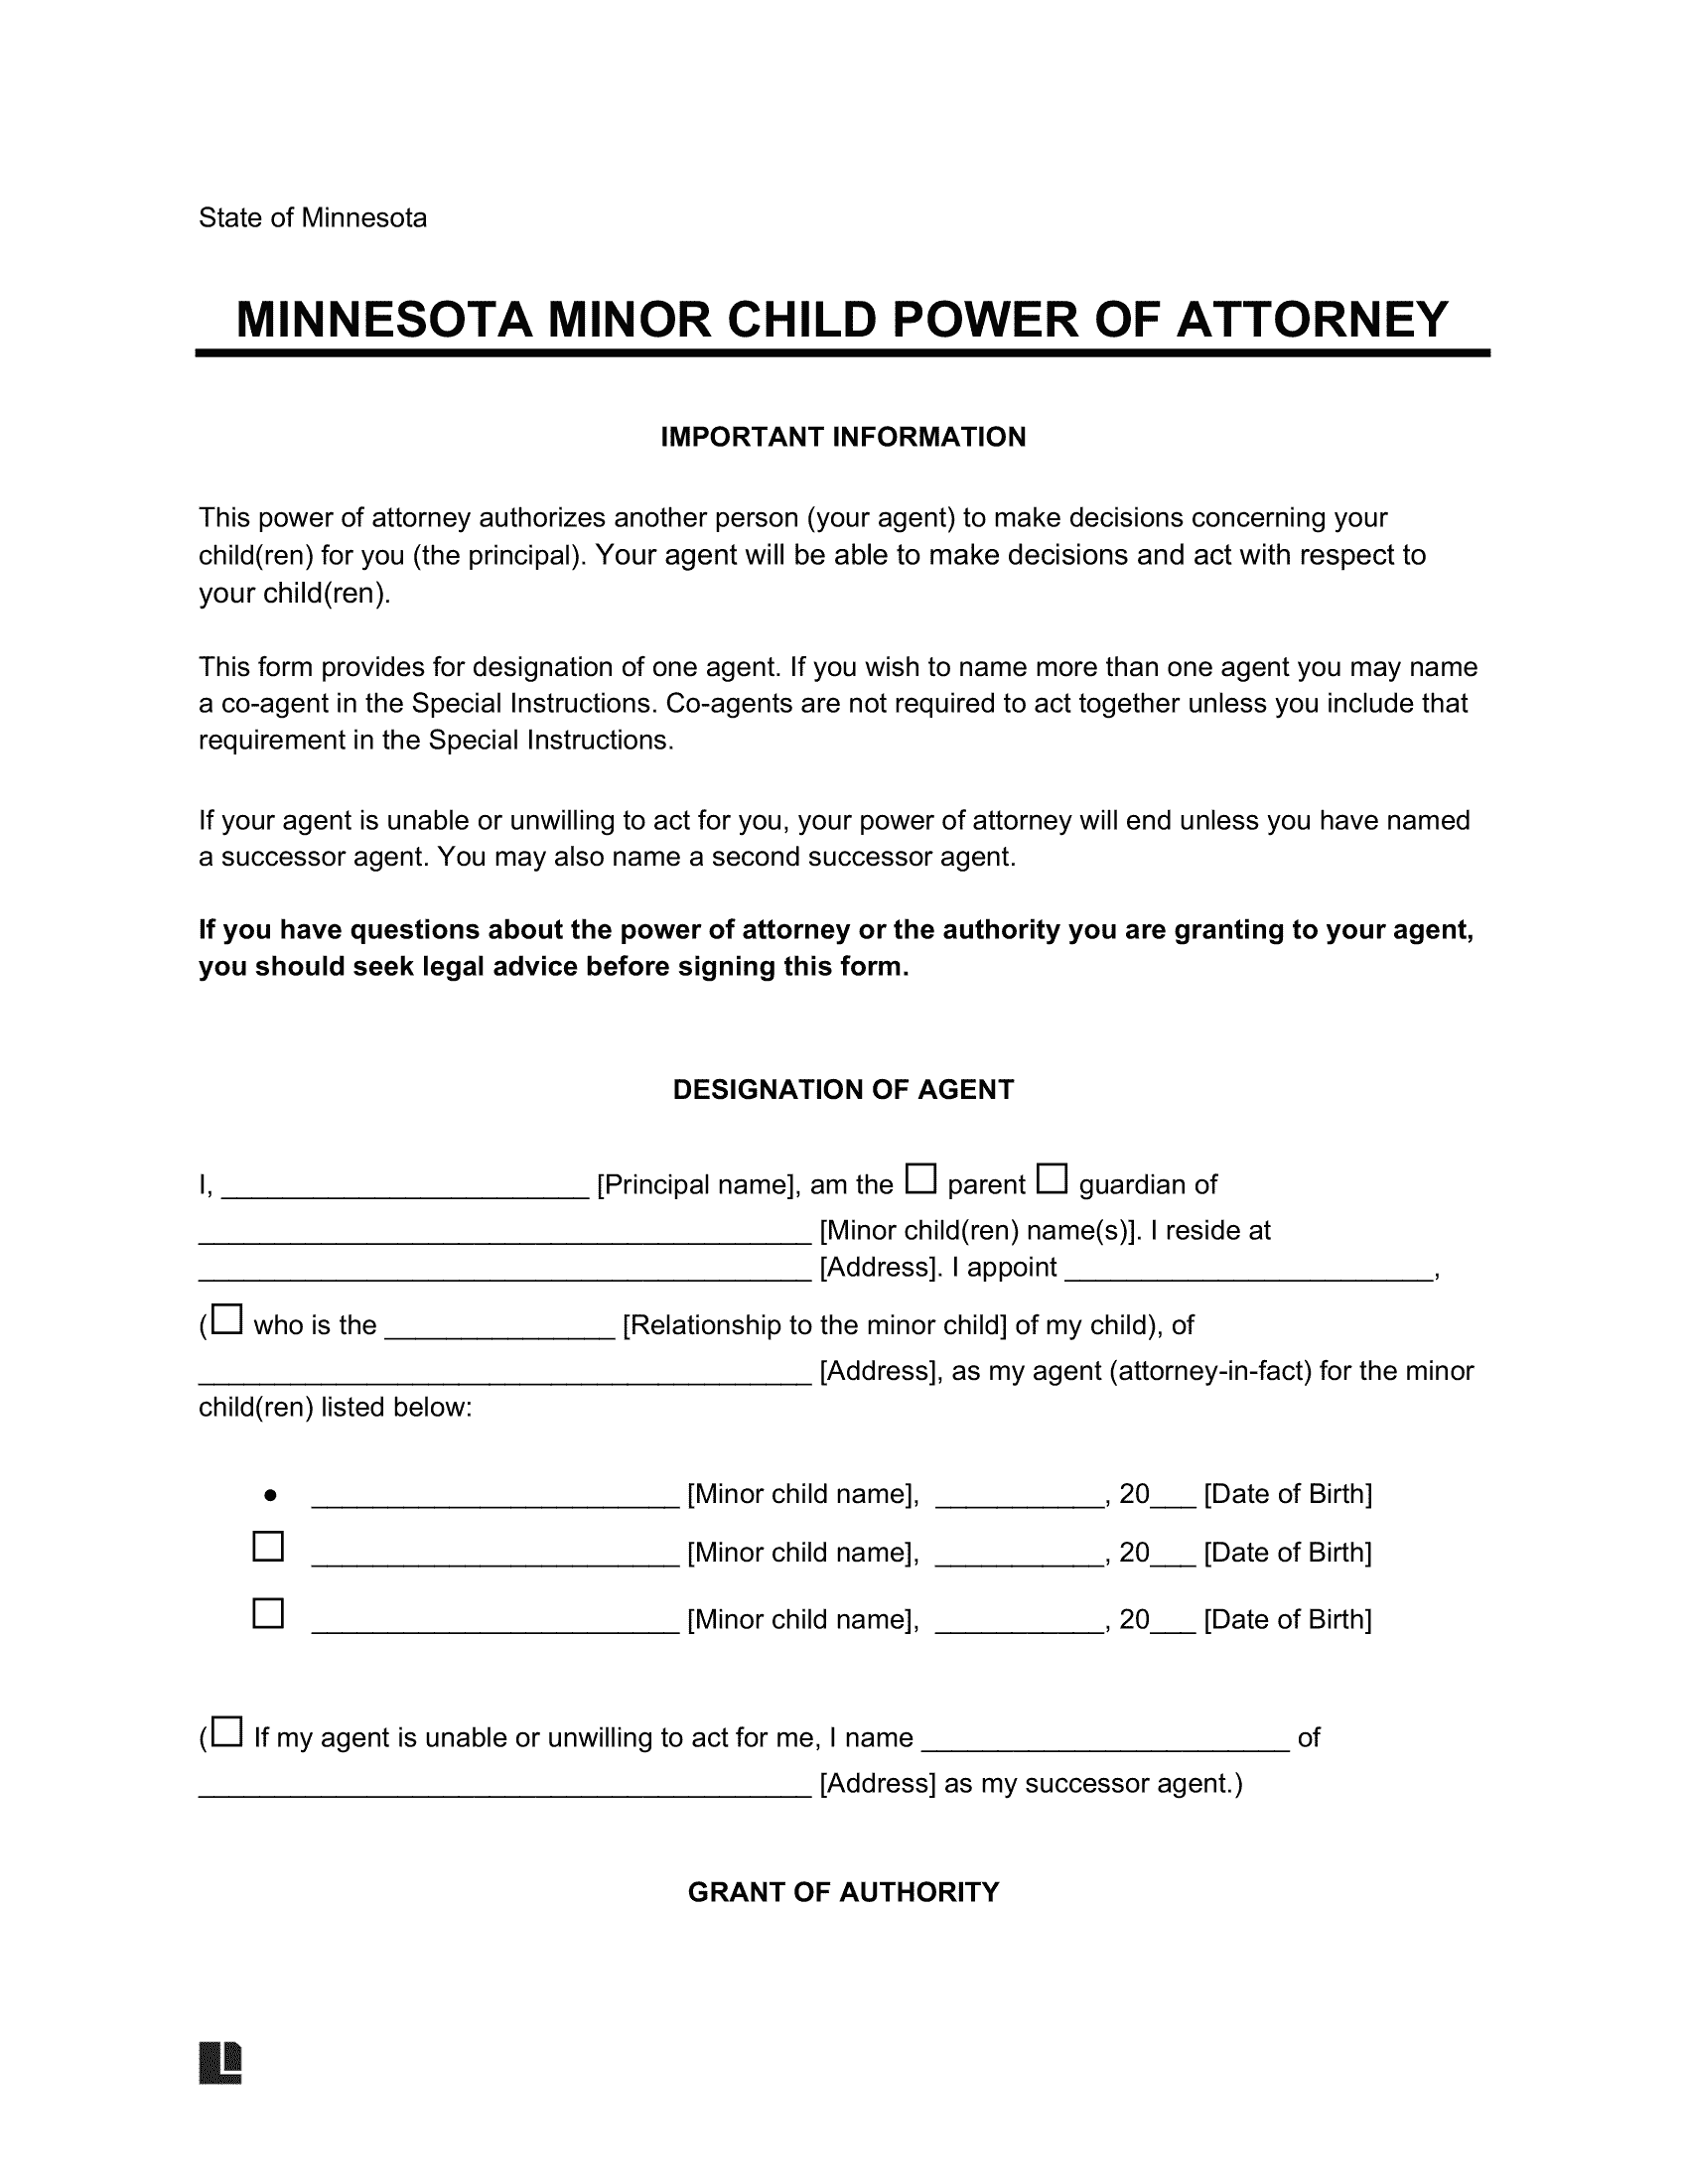 Minnesota Minor Child Power of Attorney Form